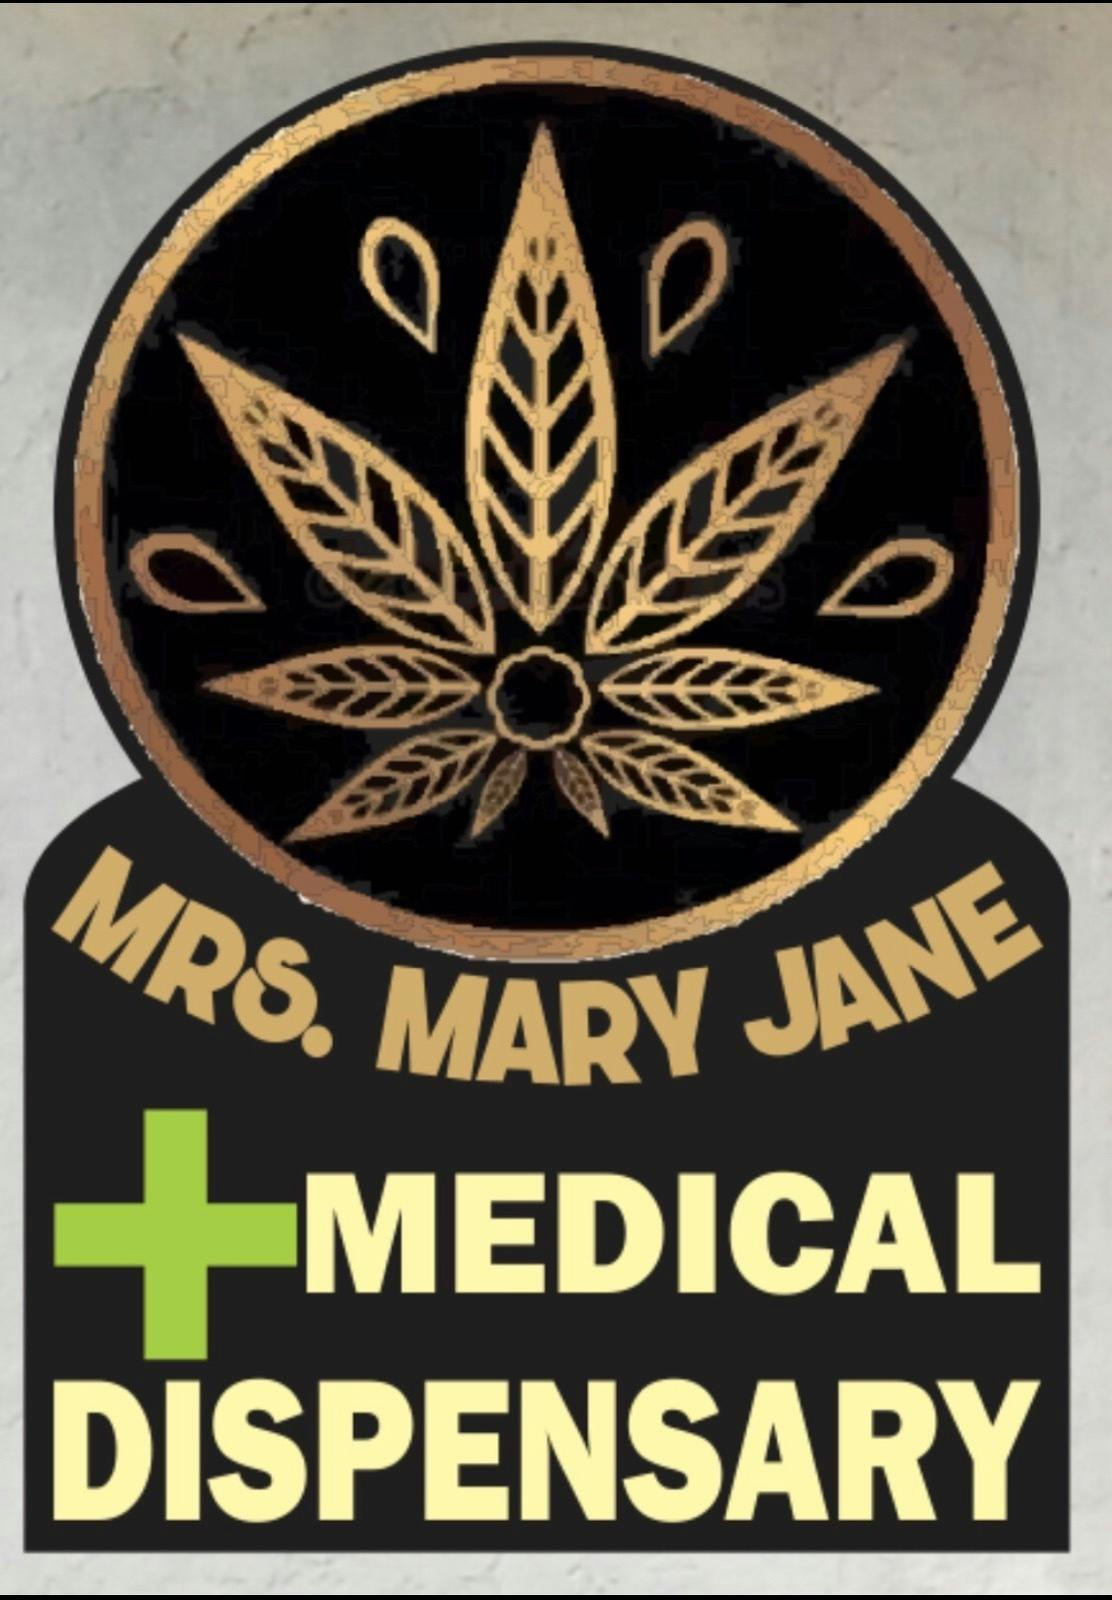 Mrs. Mary Jane ( Cannabis Dispensary)